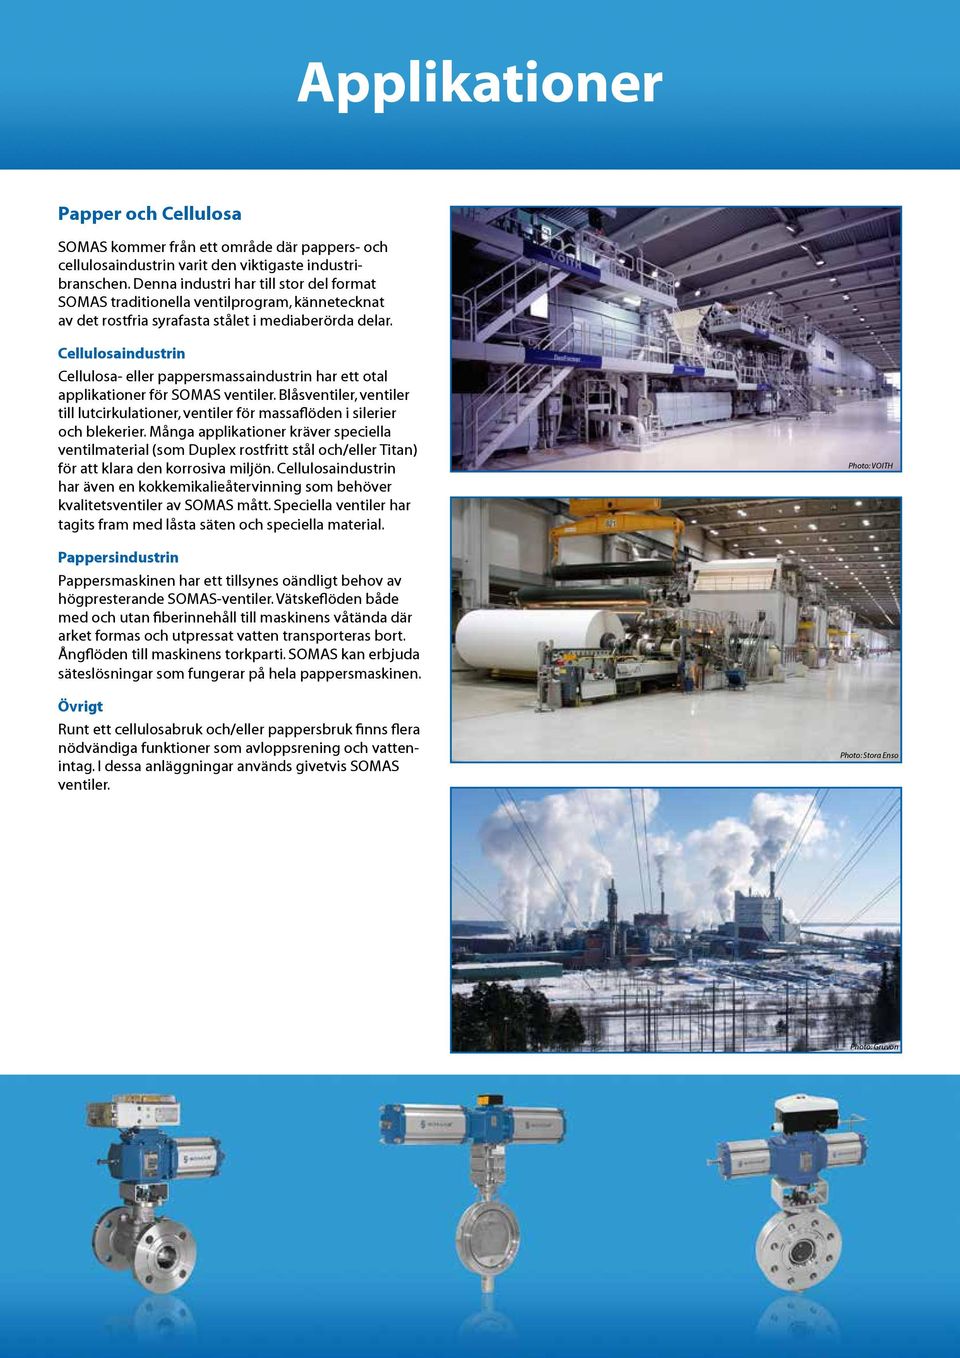 Cellulosaindustrin Cellulosa- eller pappersmassaindustrin har ett otal applikationer för SOMAS ventiler.